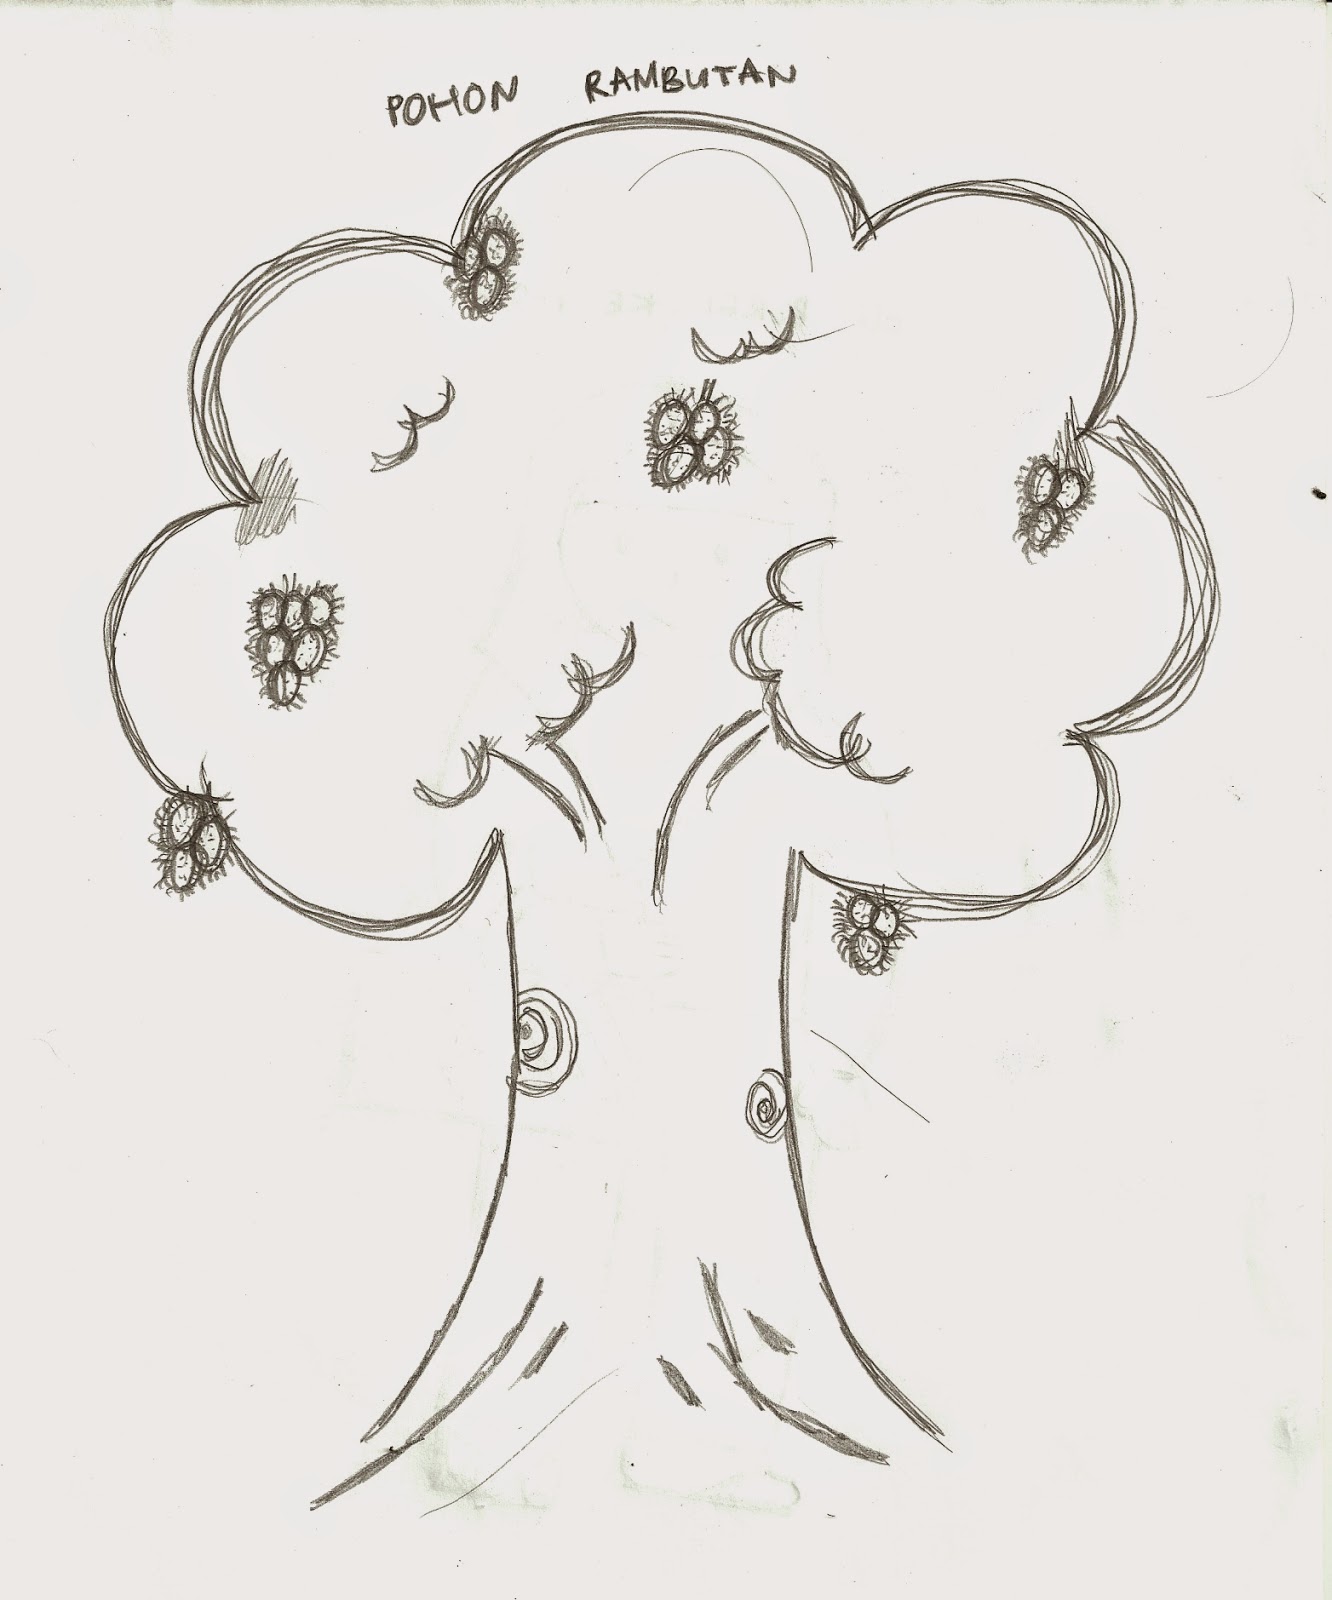 32 Gambar Kartun Pohon Rambutan Kumpulan Kartun Hd